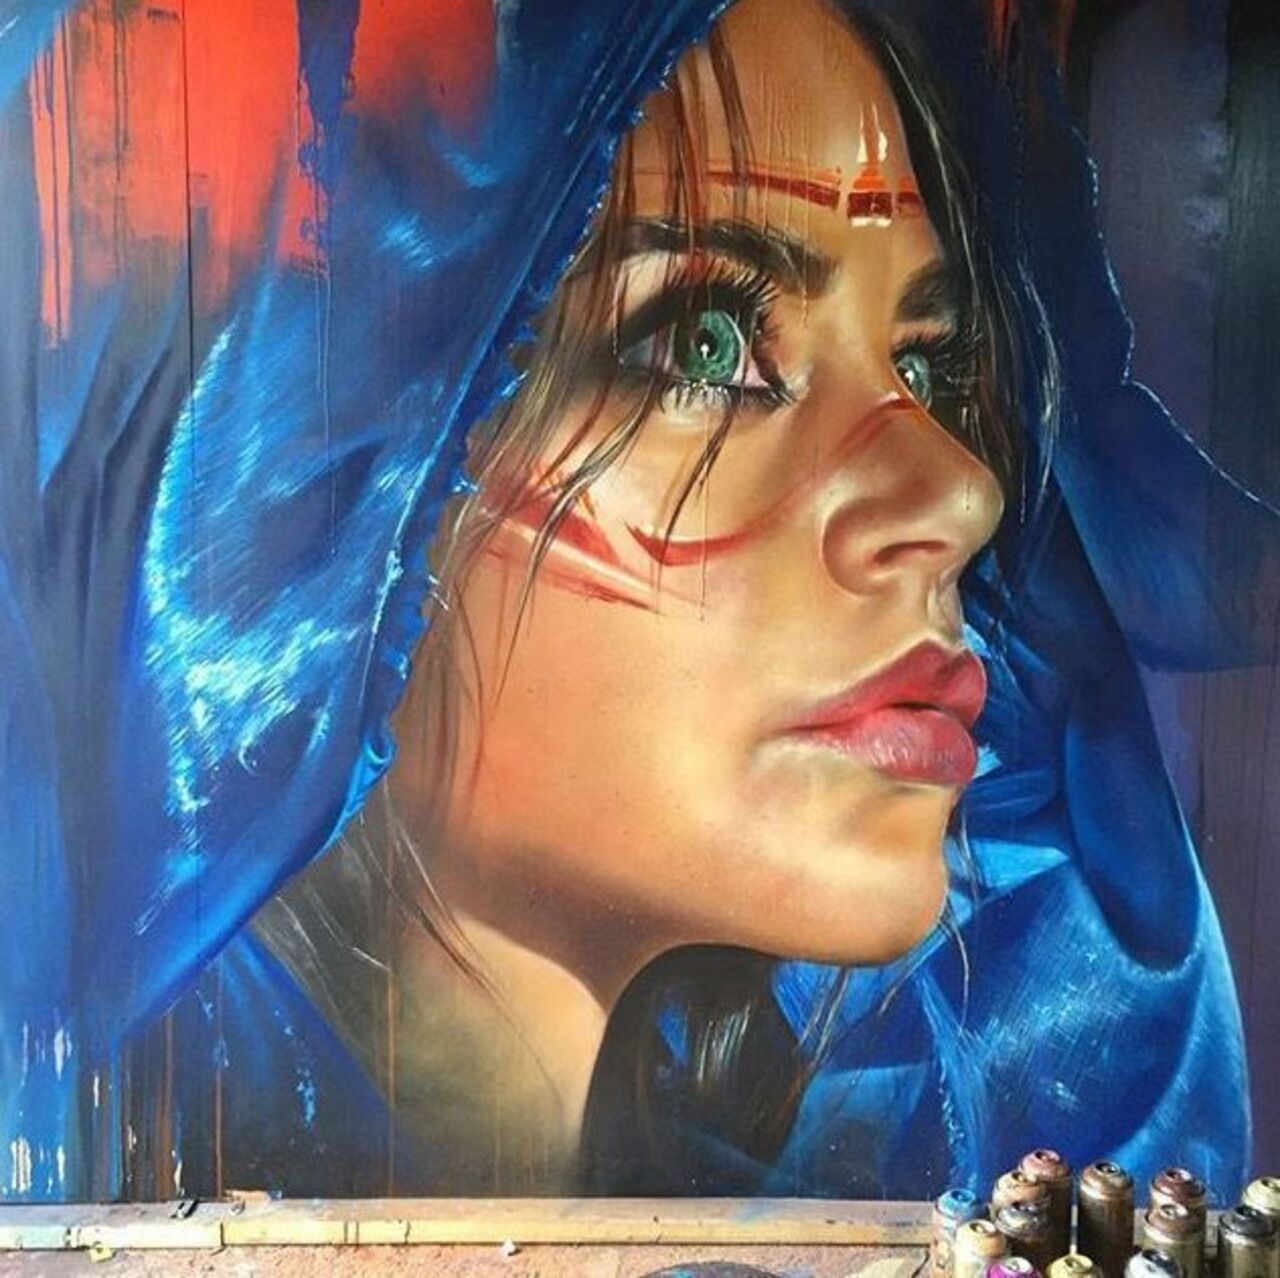 Mural by Adnate #streetart #mural #graffiti #art https://t.co/tY1XUQ9mMX